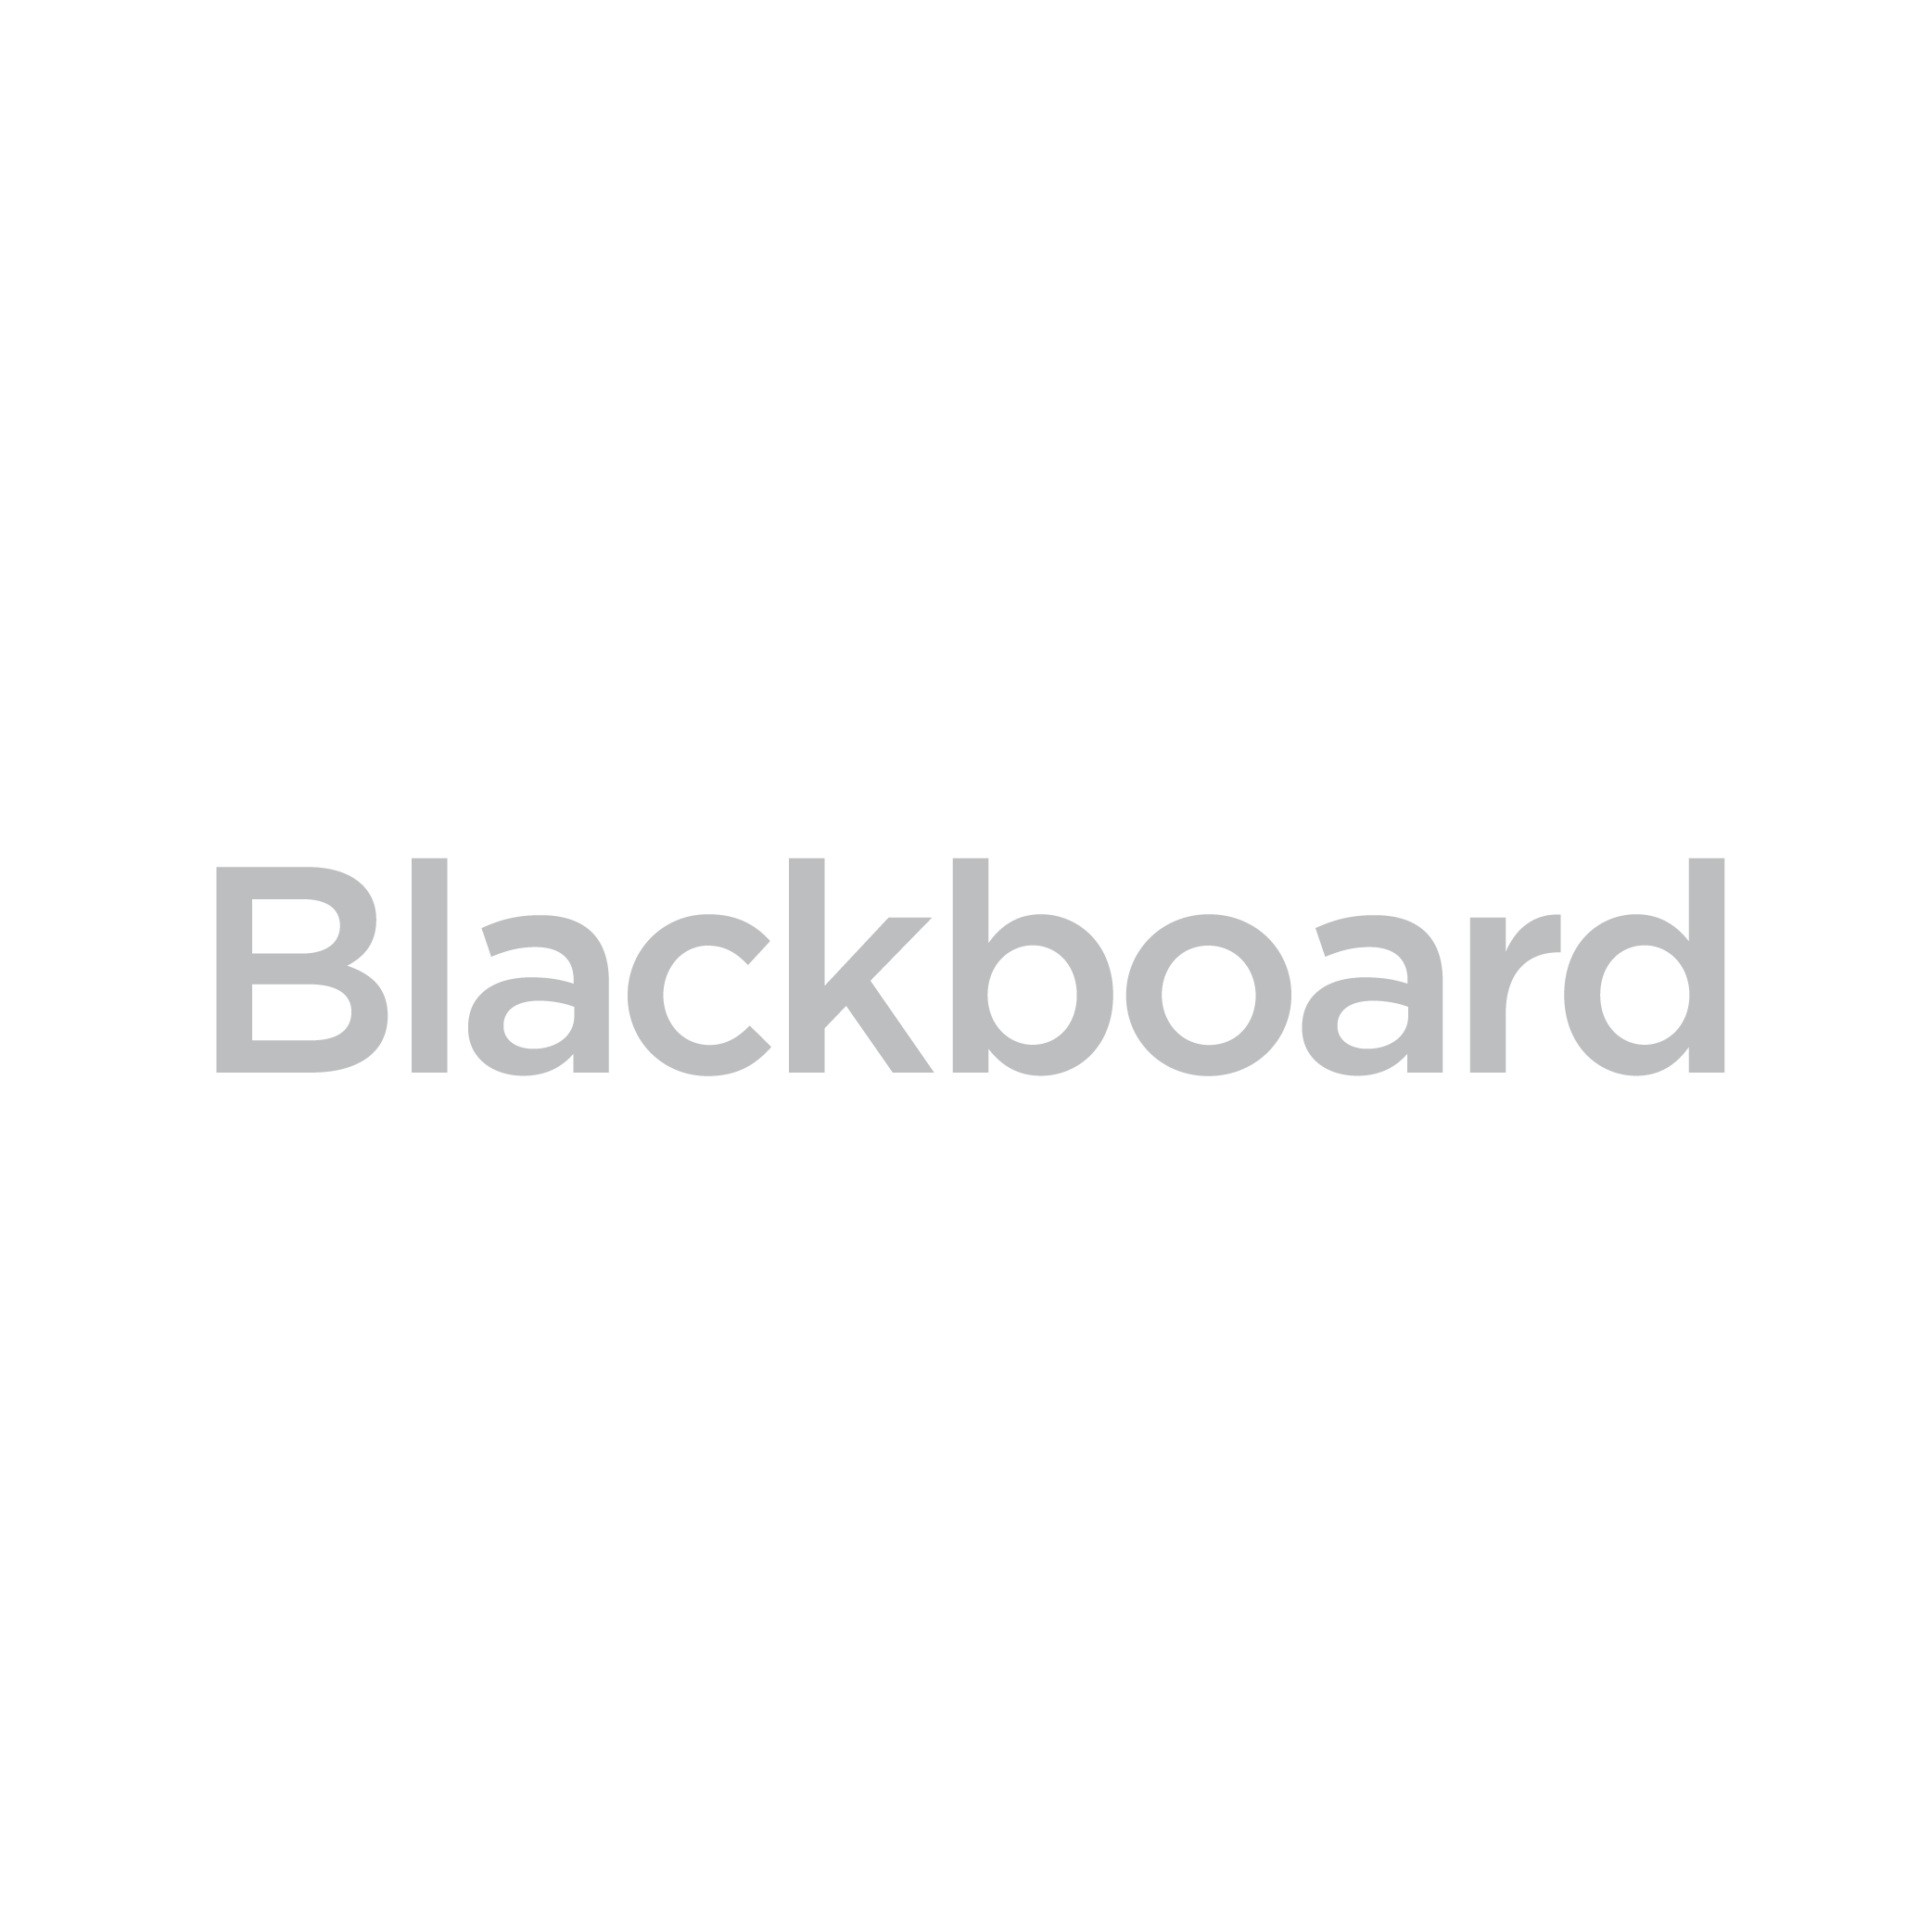 blackboard_gray-01.png